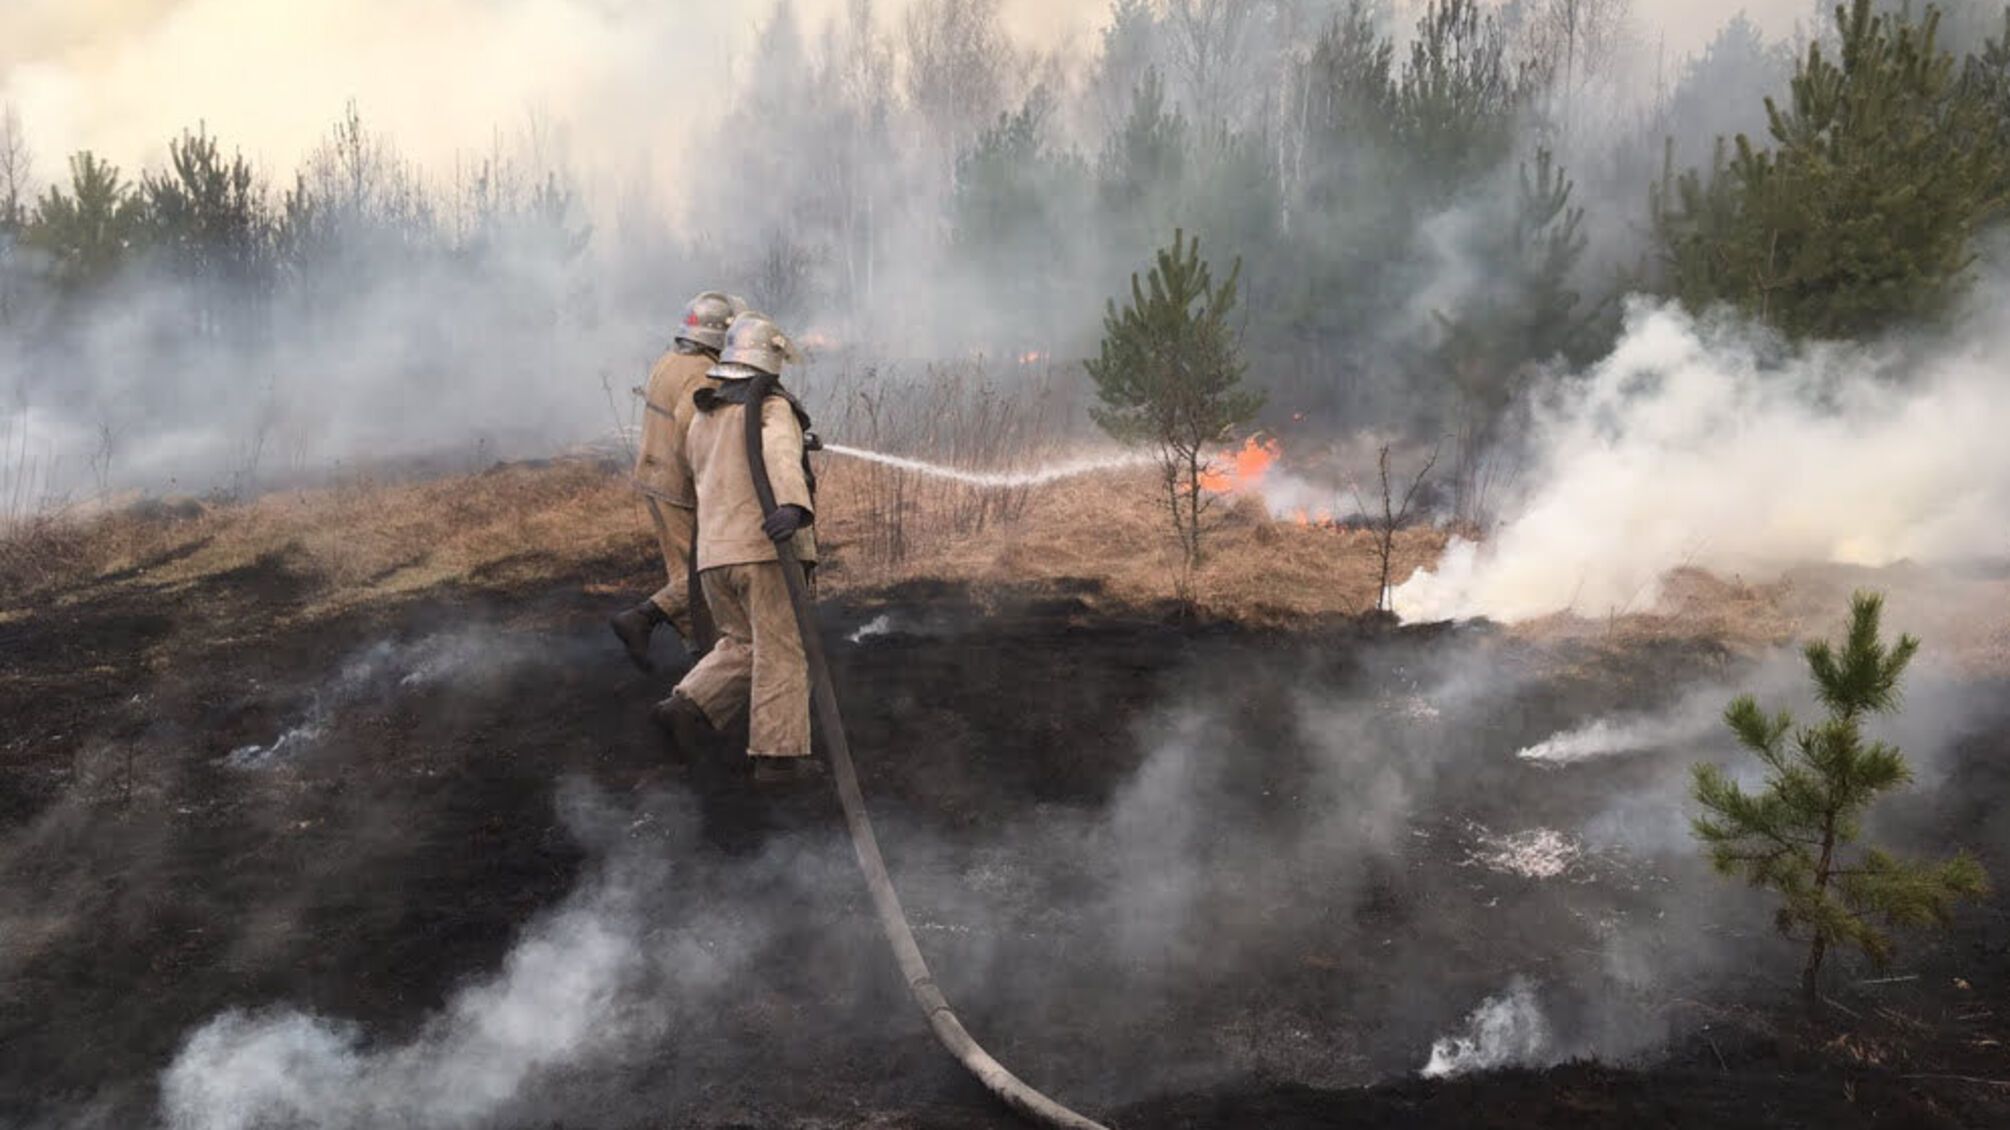 Житомирська область: пожежа на території трьох лісництв Народицького спецлісгоспу ліквідована